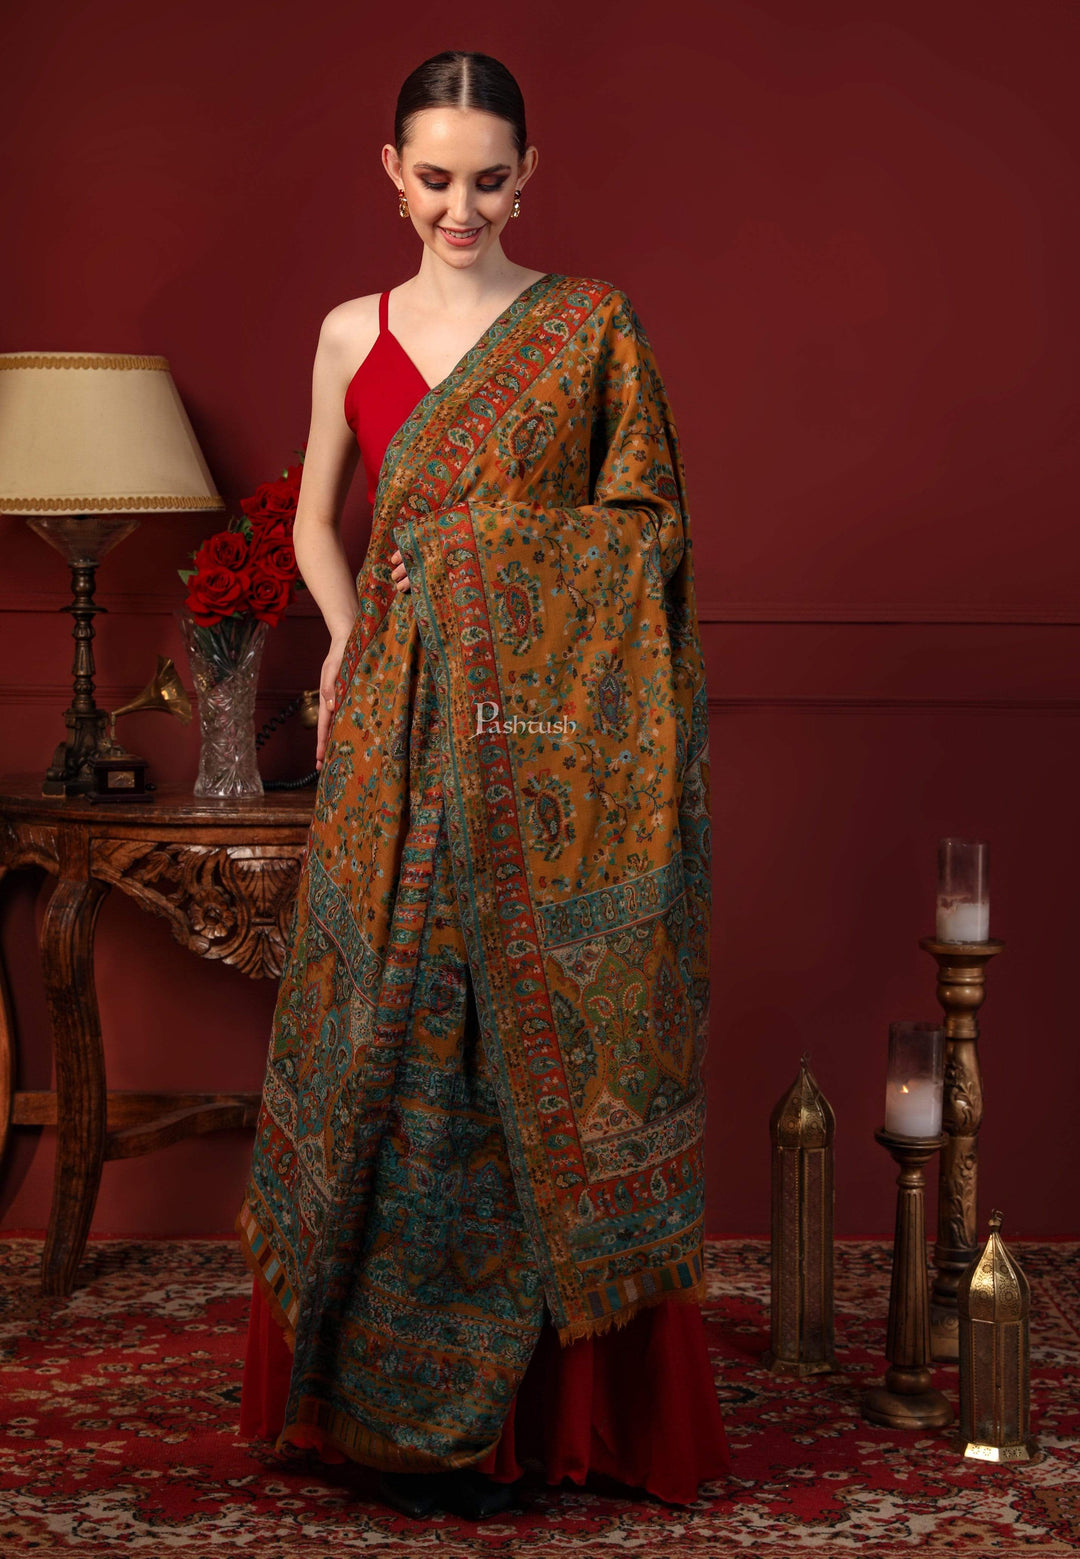 Pashtush India 70x200 Pashtush Women Multi-coloured 100% Pure Wool Woven Design Ethnic Stole